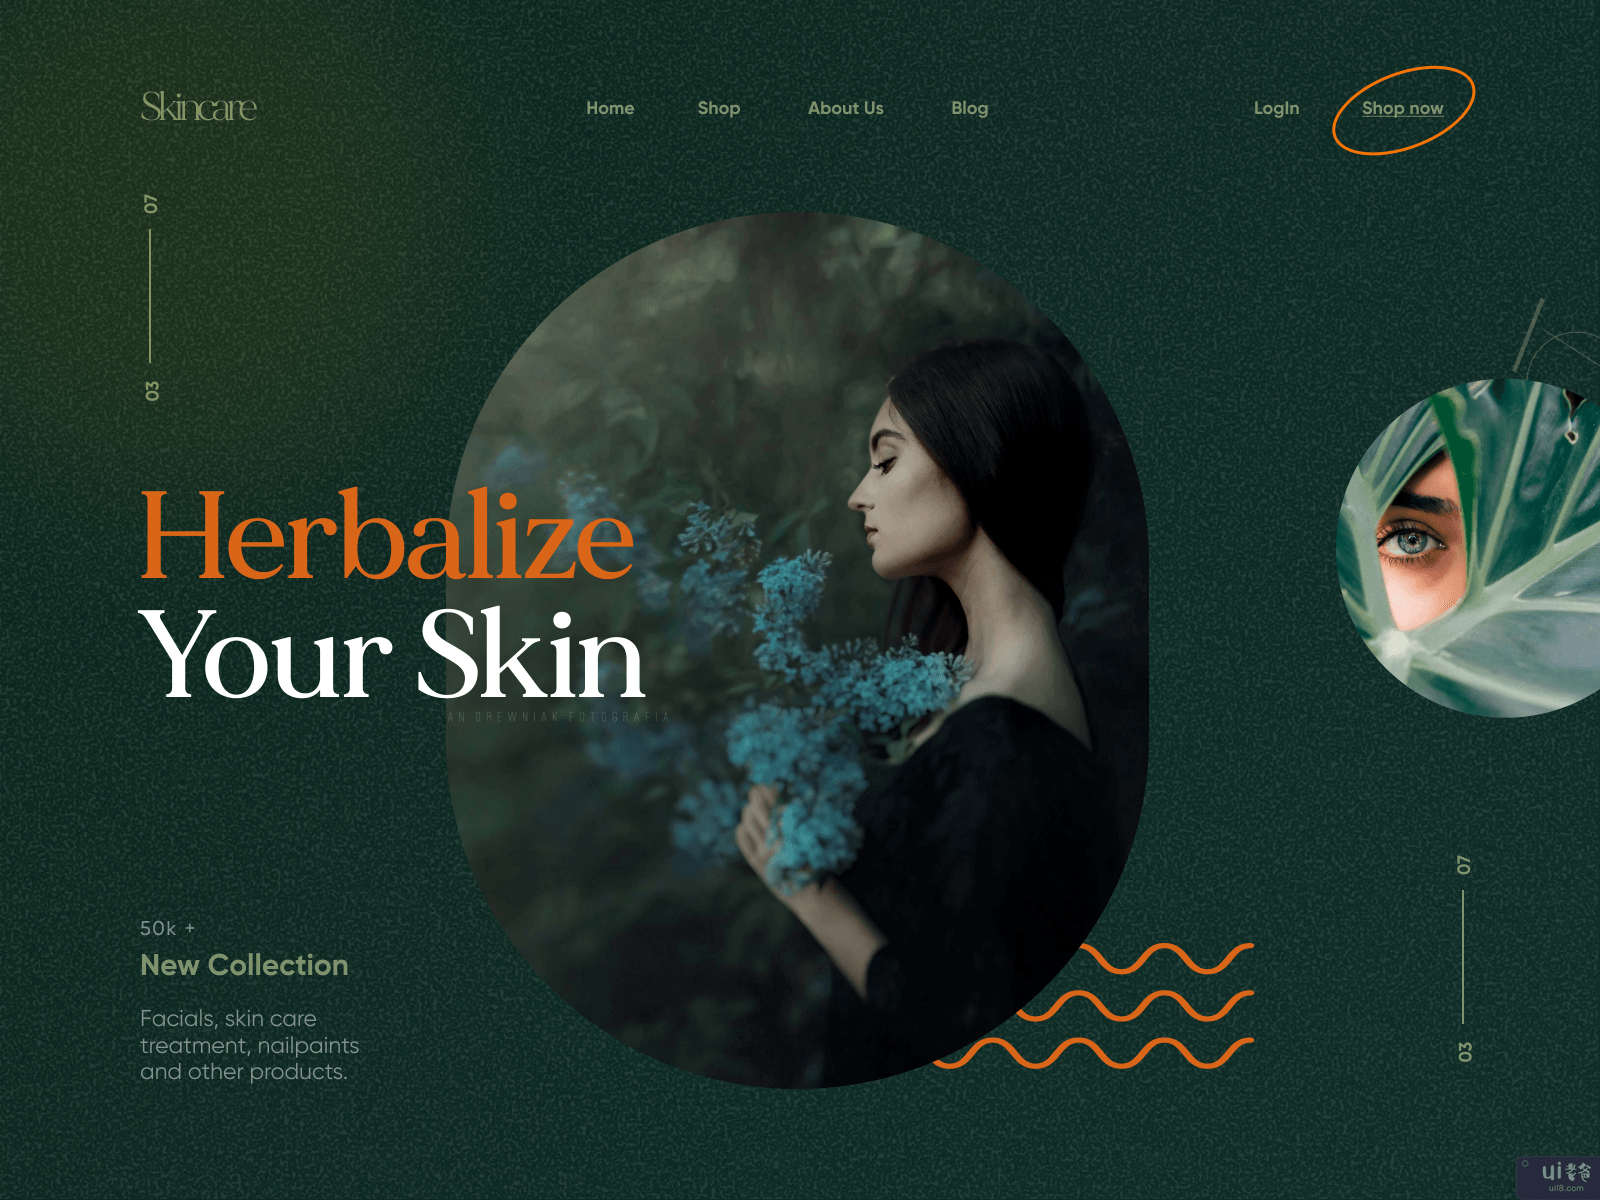 时尚/皮肤护理网站设计(Fashion / Skin Care Website Design)插图